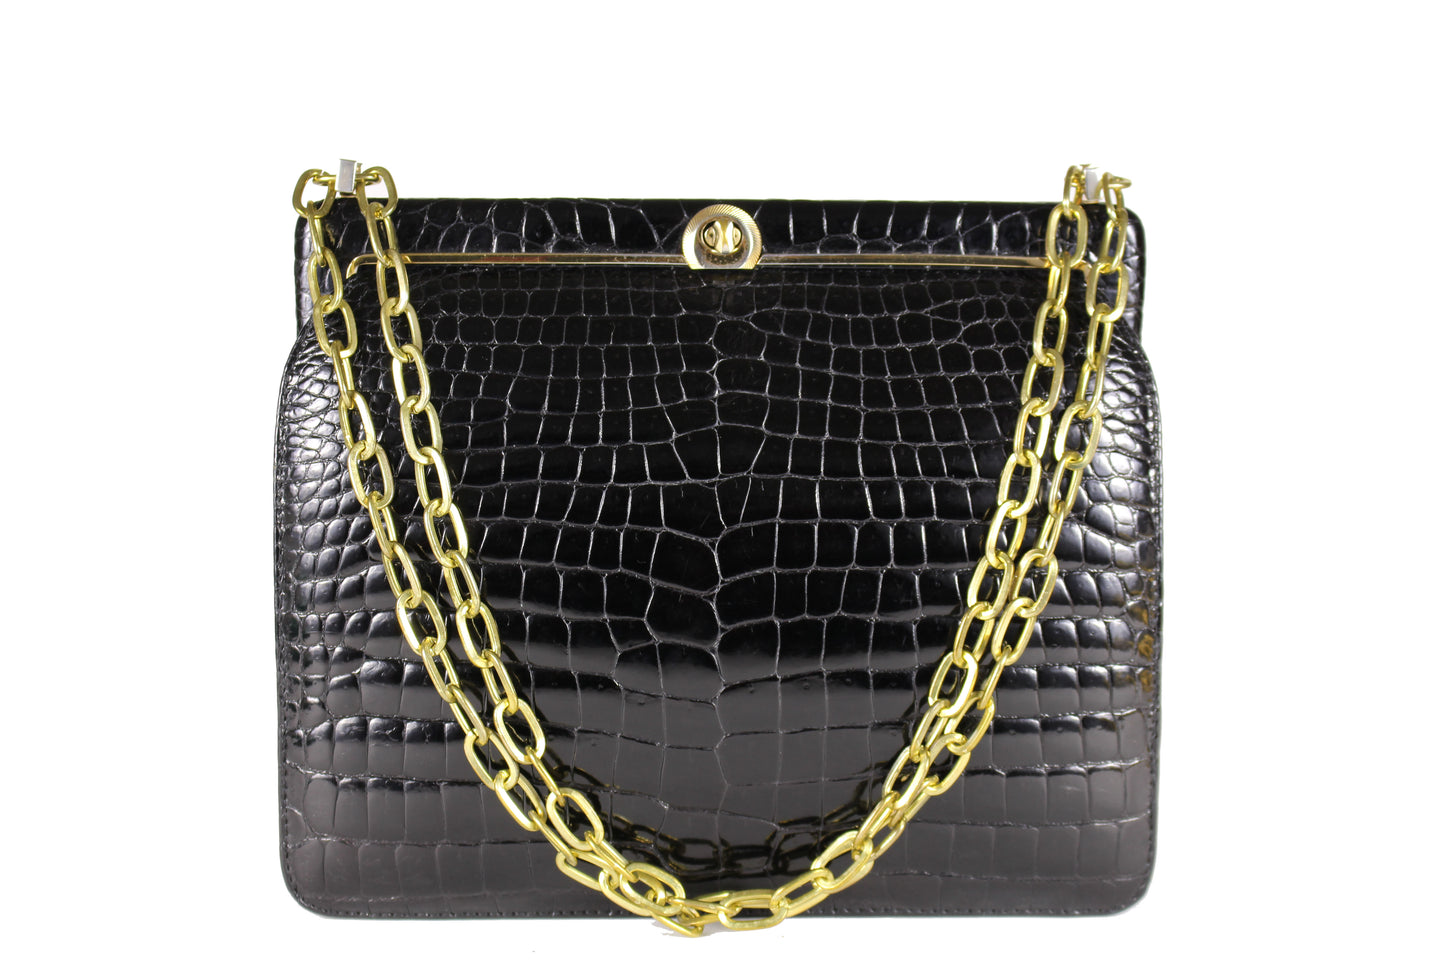 LOEWE black crocodile bag with chain handle